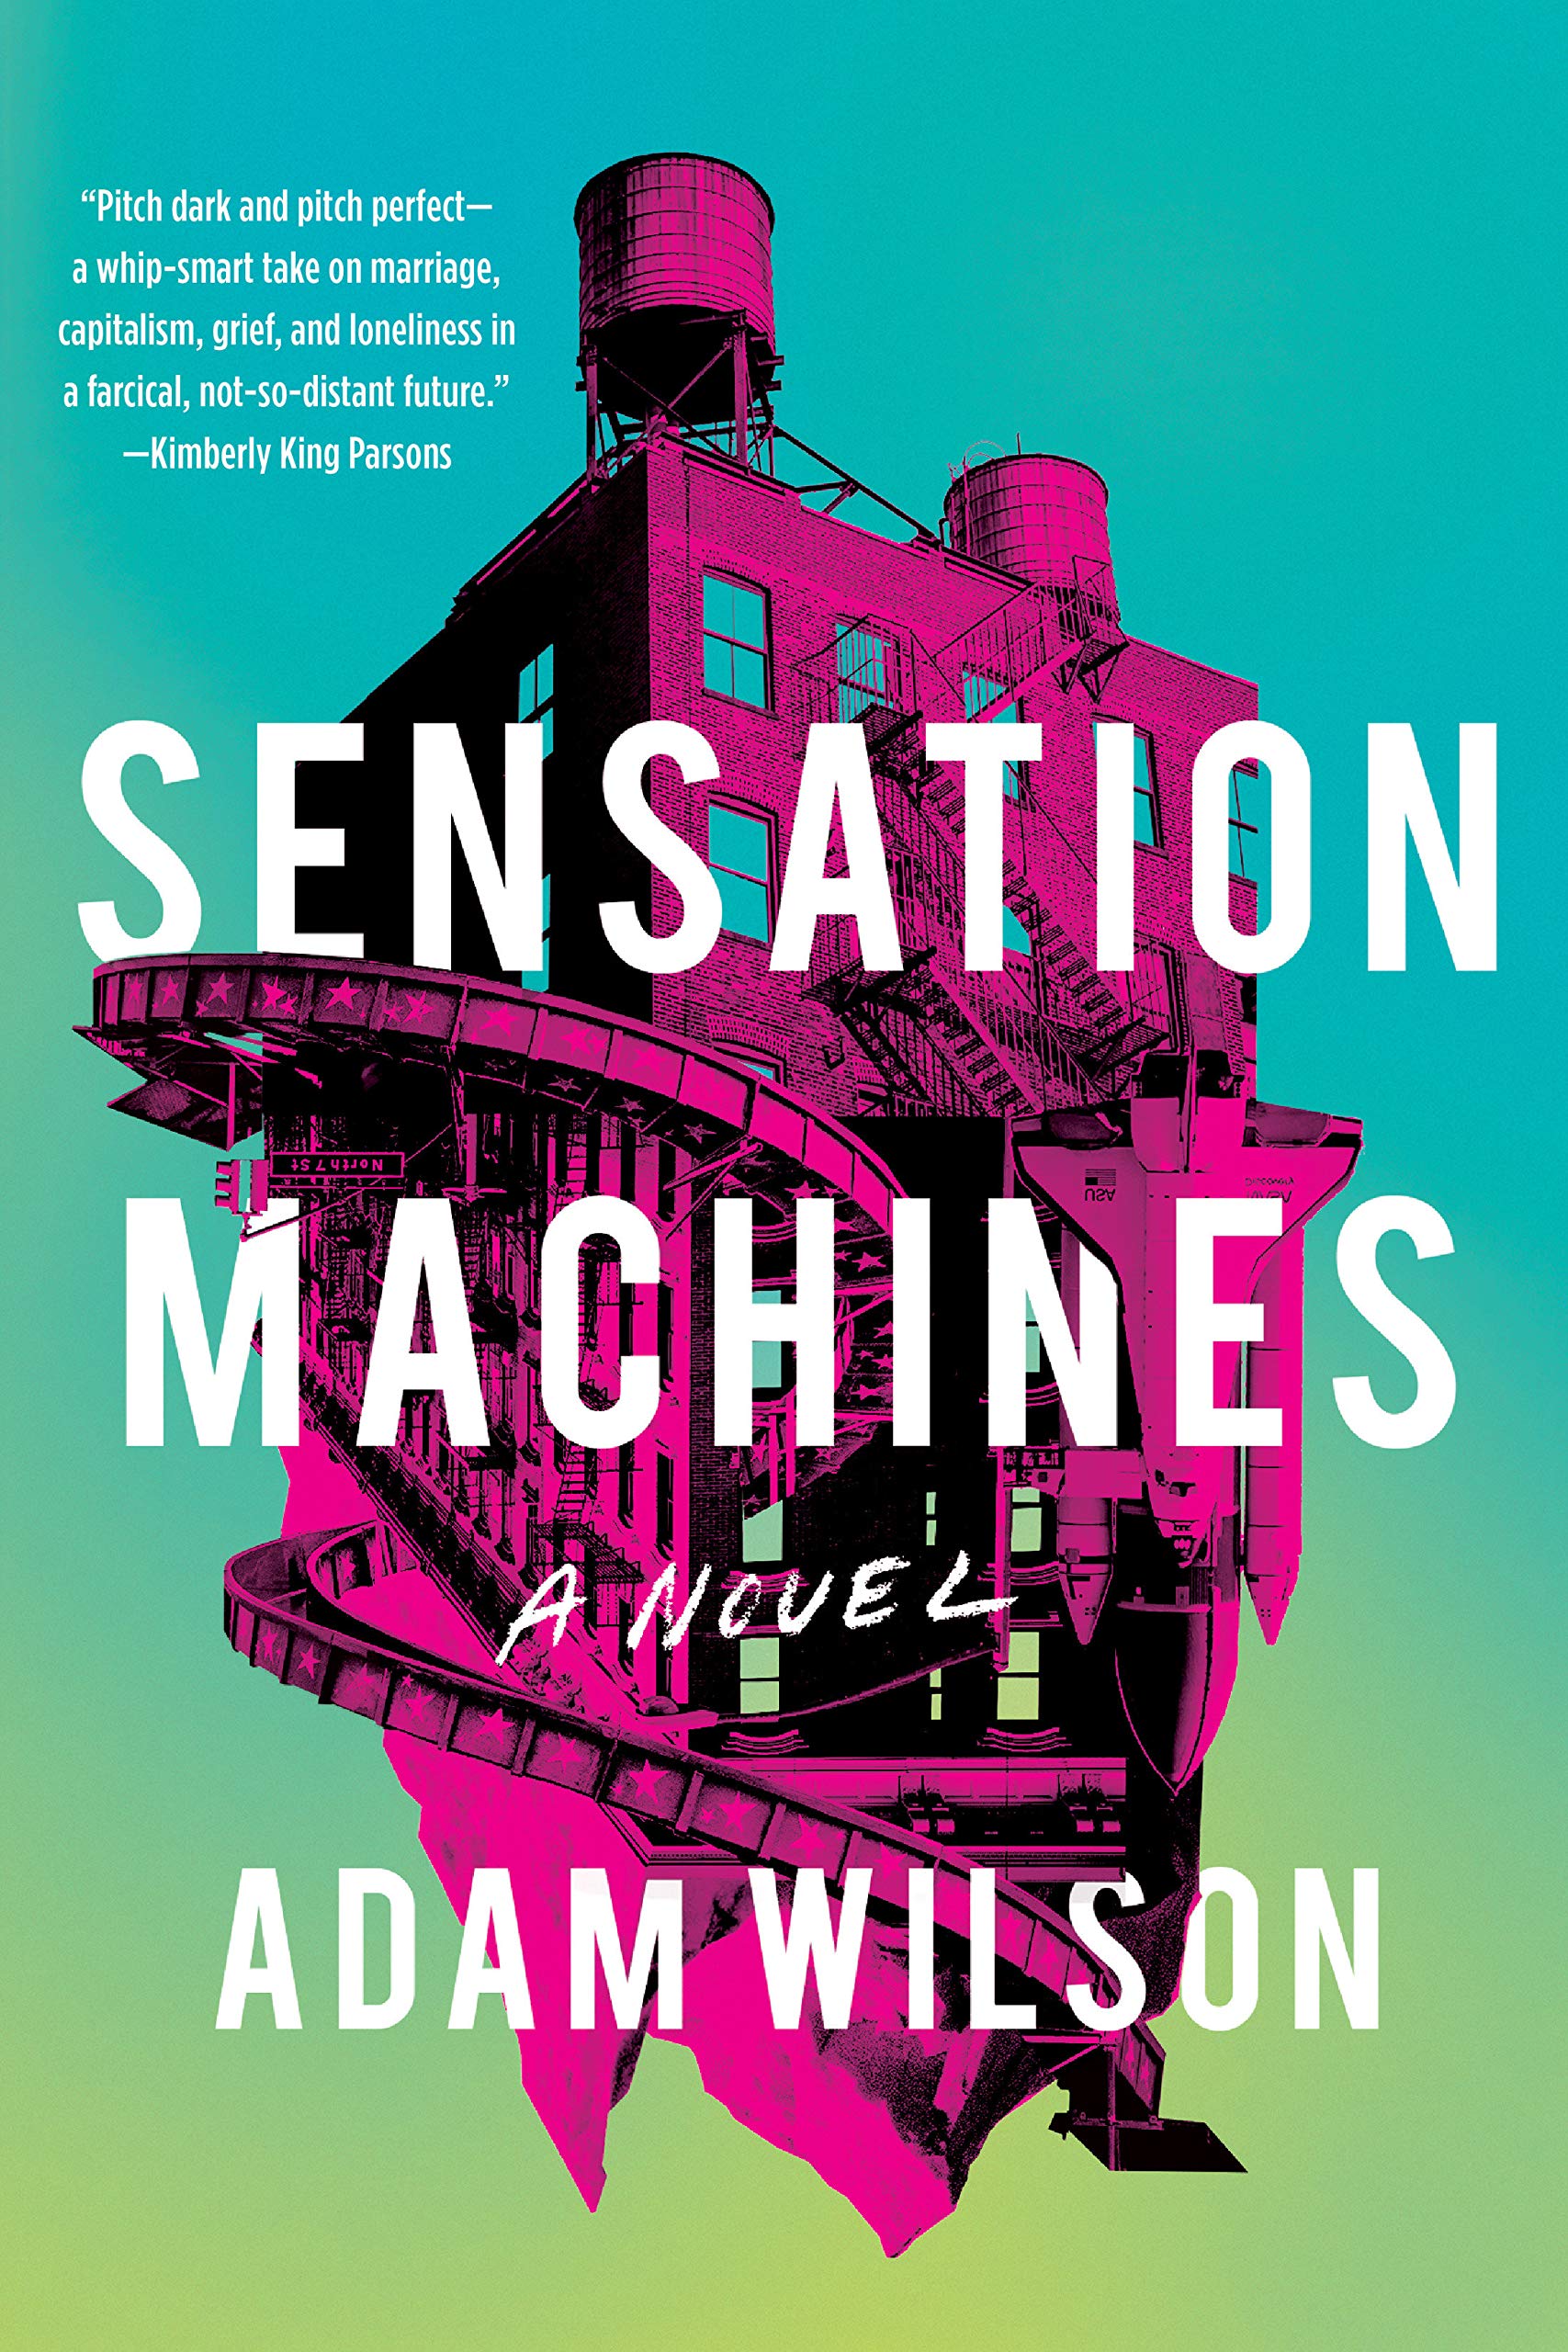 Paperback Book Launch: Sensation Machines by Adam Wilson in conversation with Christian Lorentzen